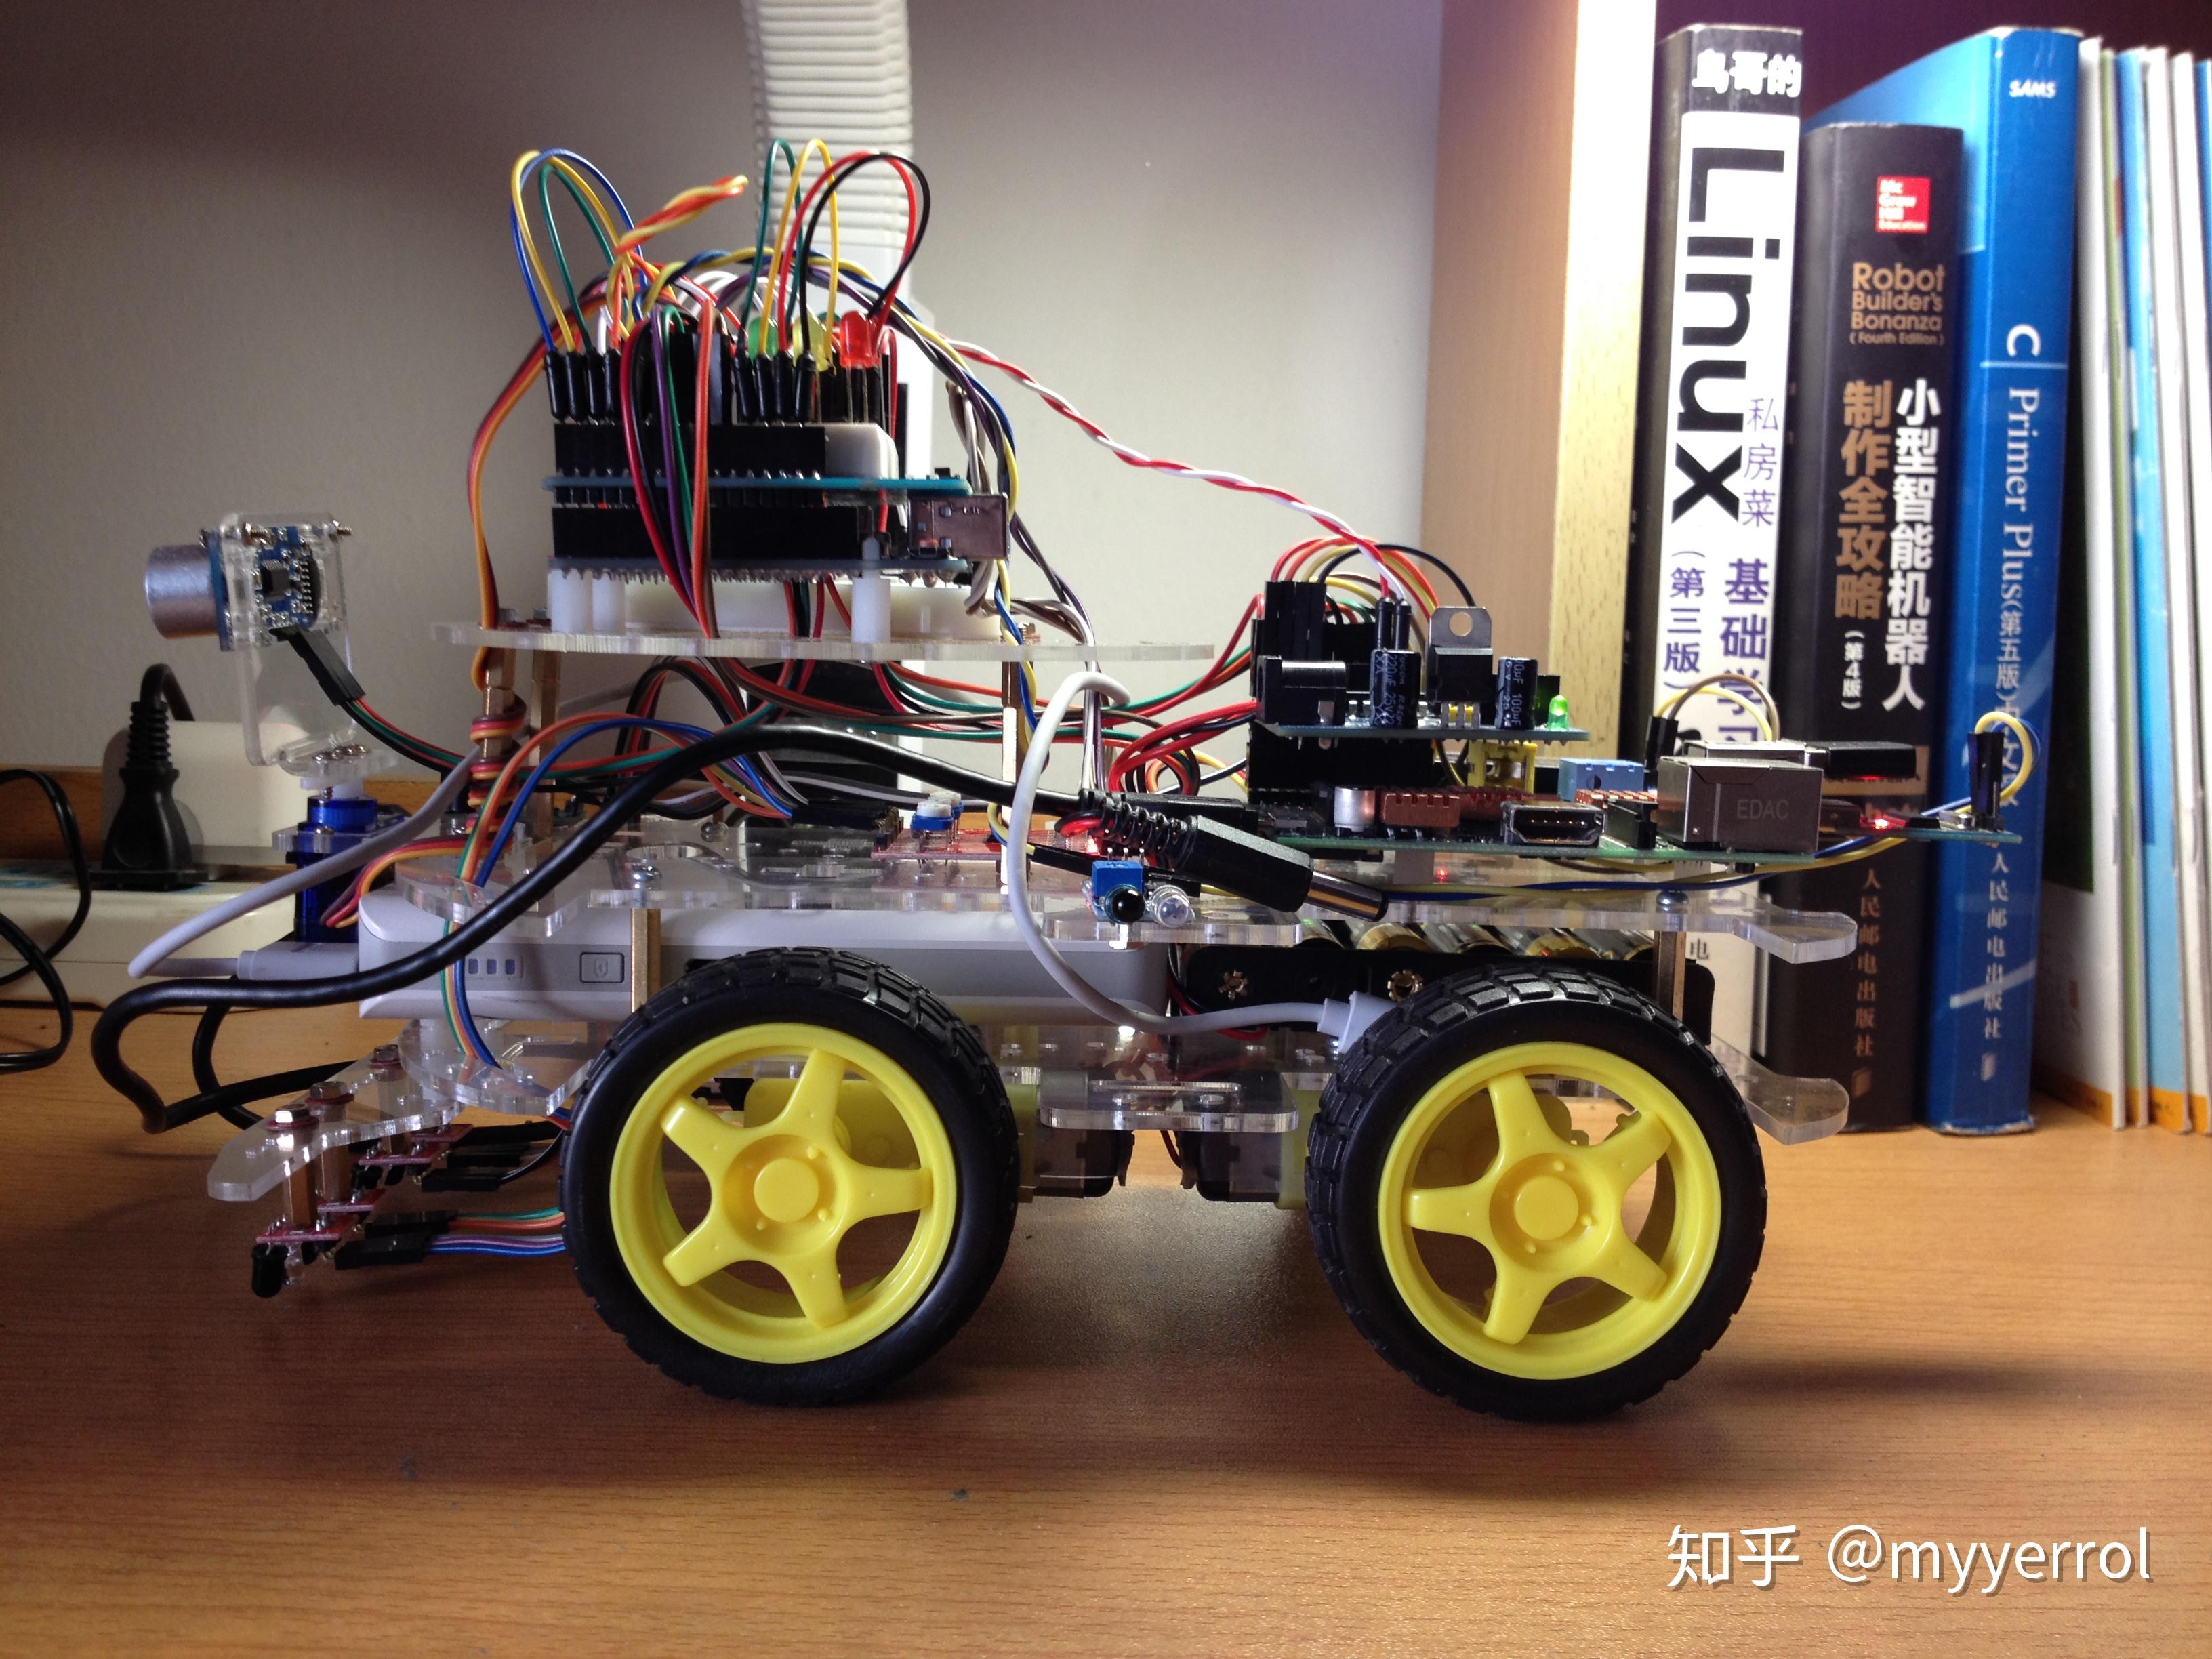 AlphaBot2 robot building kit for Arduino (no Arduino controller) - elecom.sk